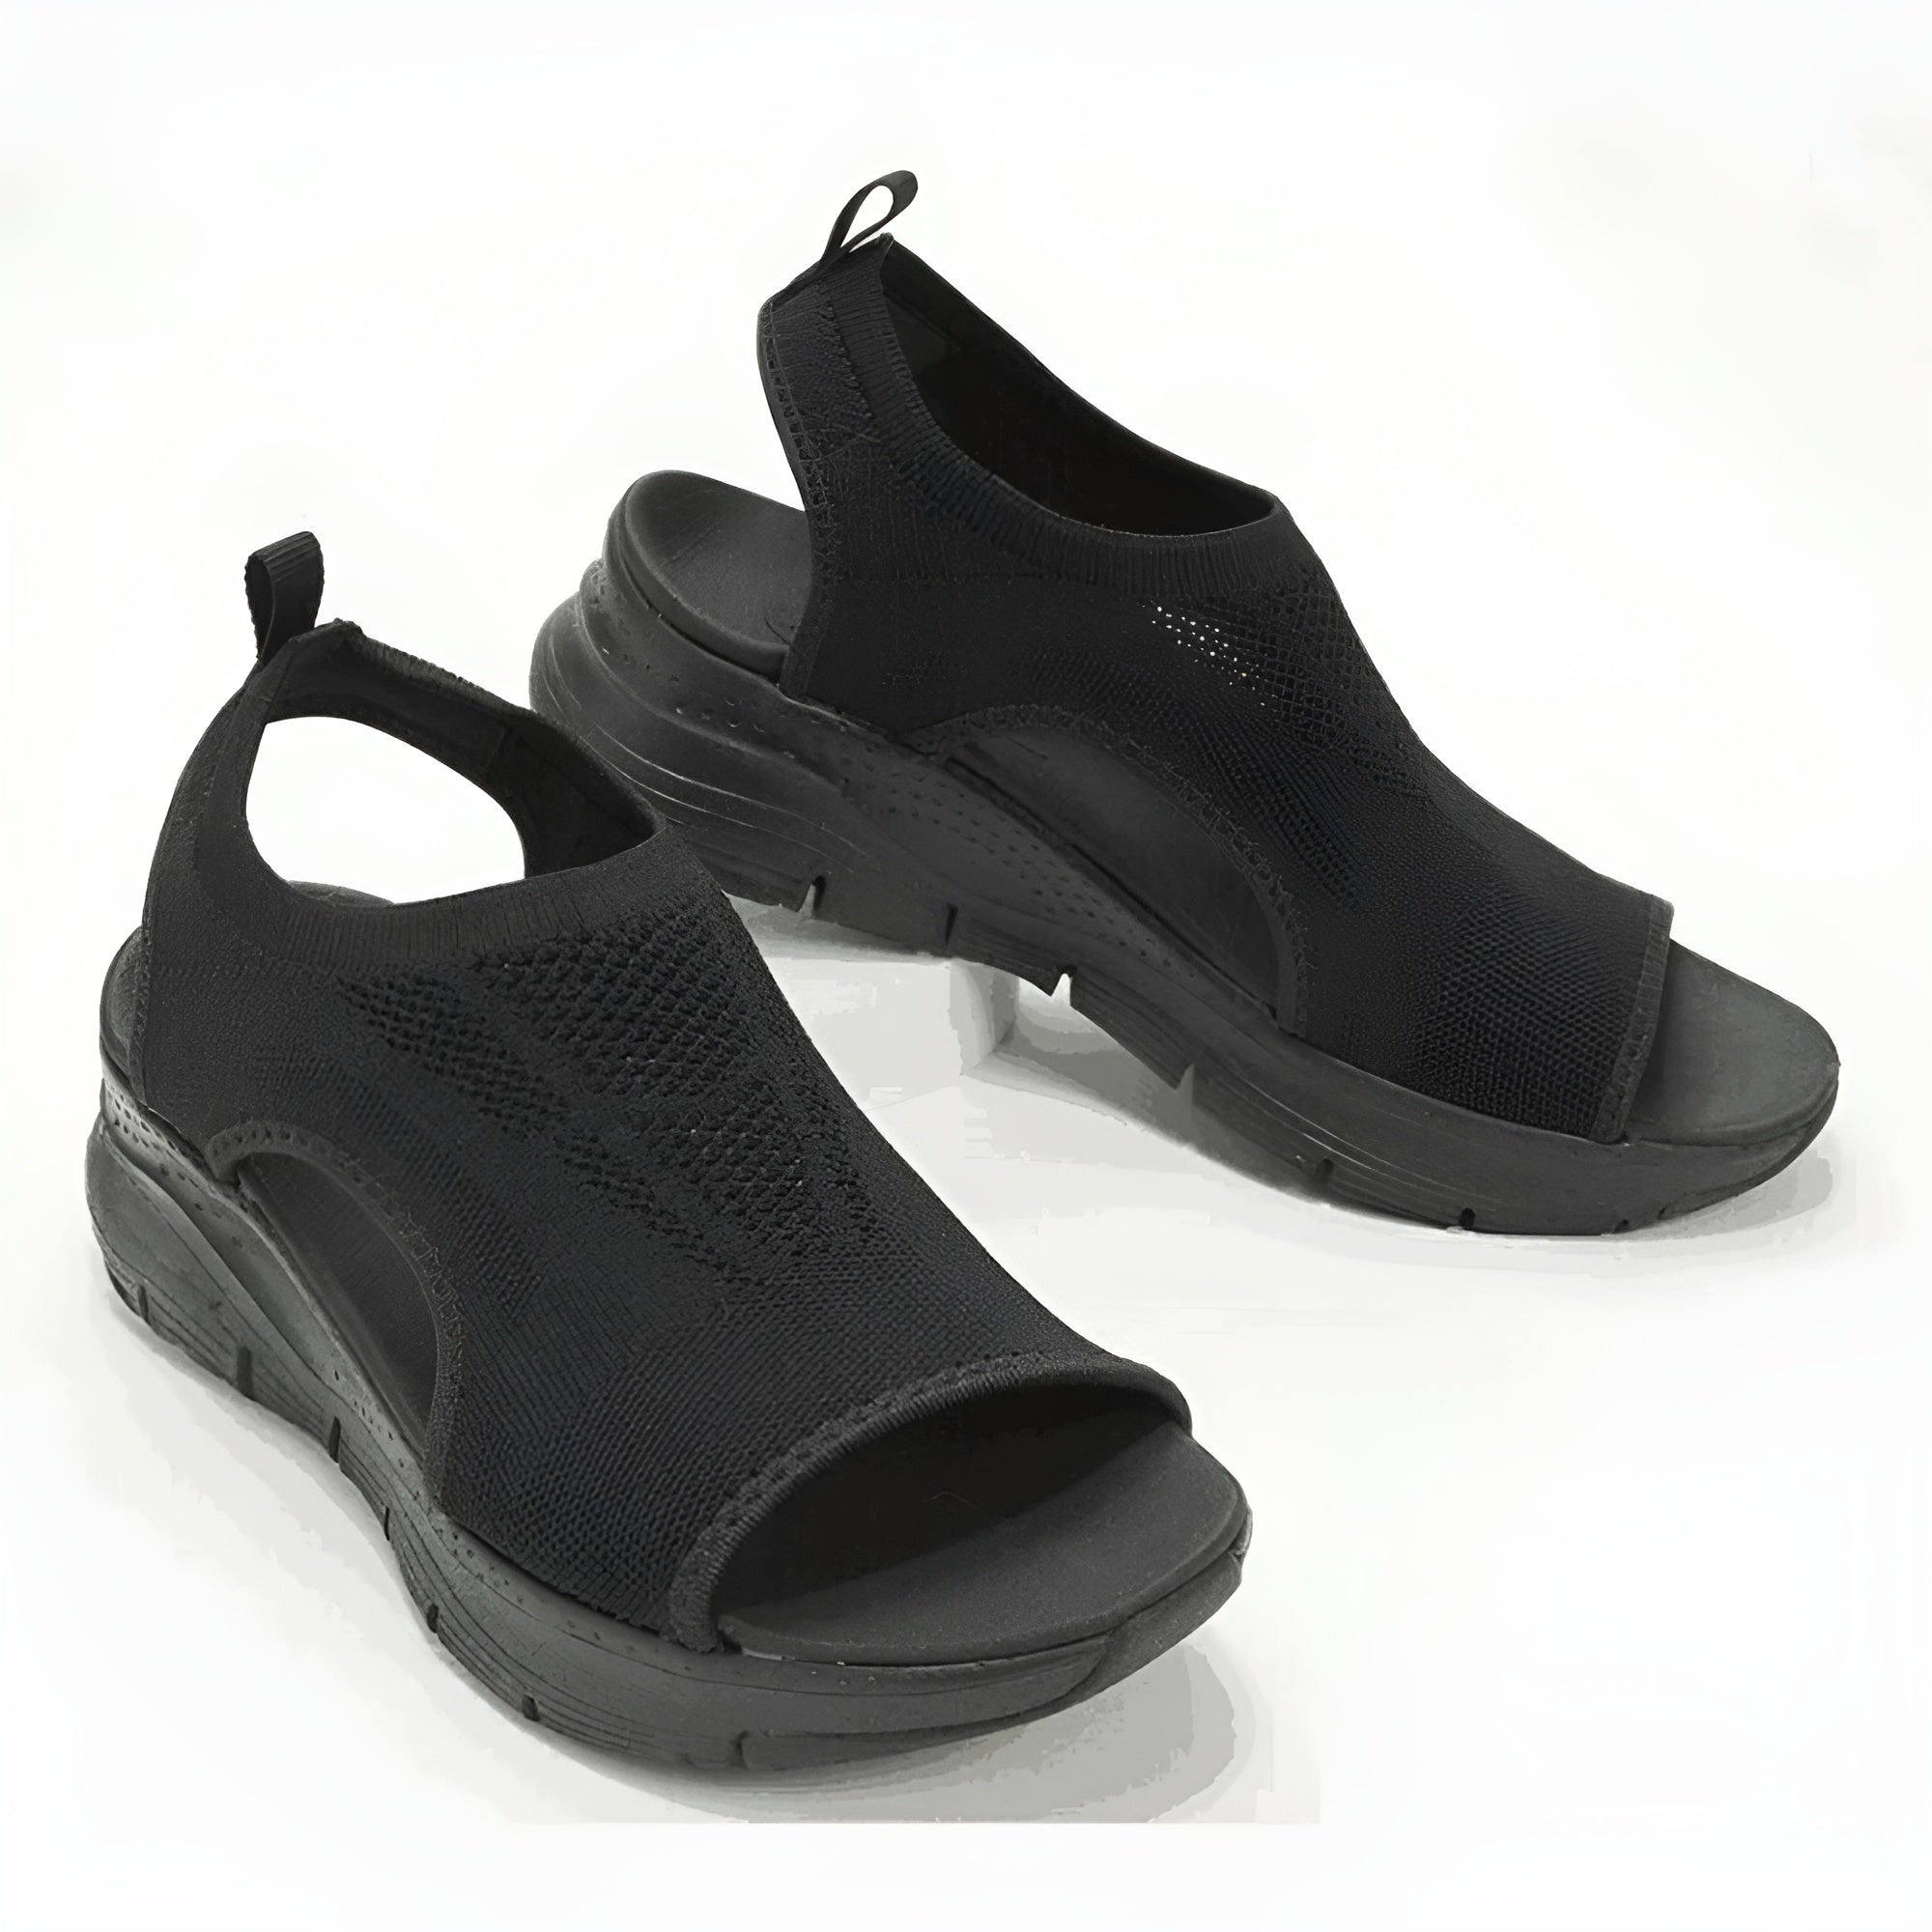 Mika - Stylish Orthopaedic Sandals